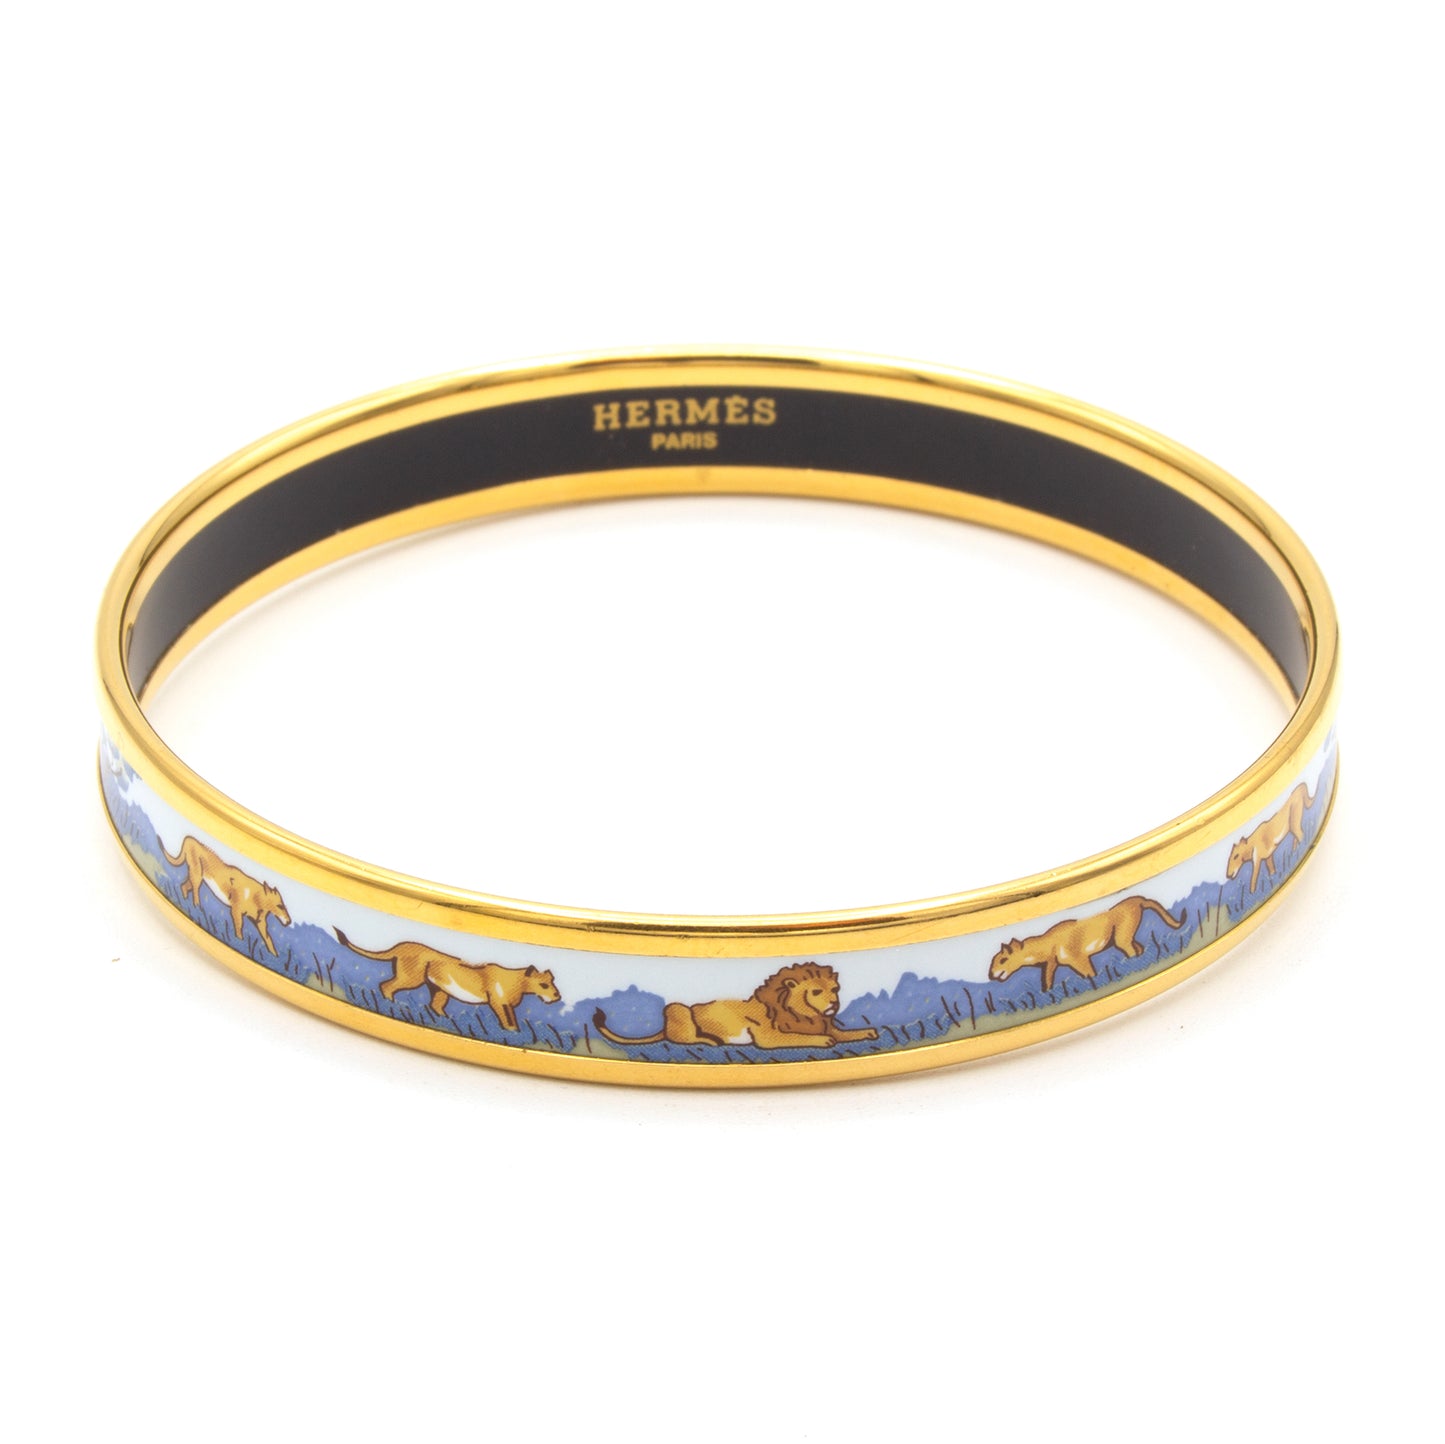 Hermes enamel lions bracelet